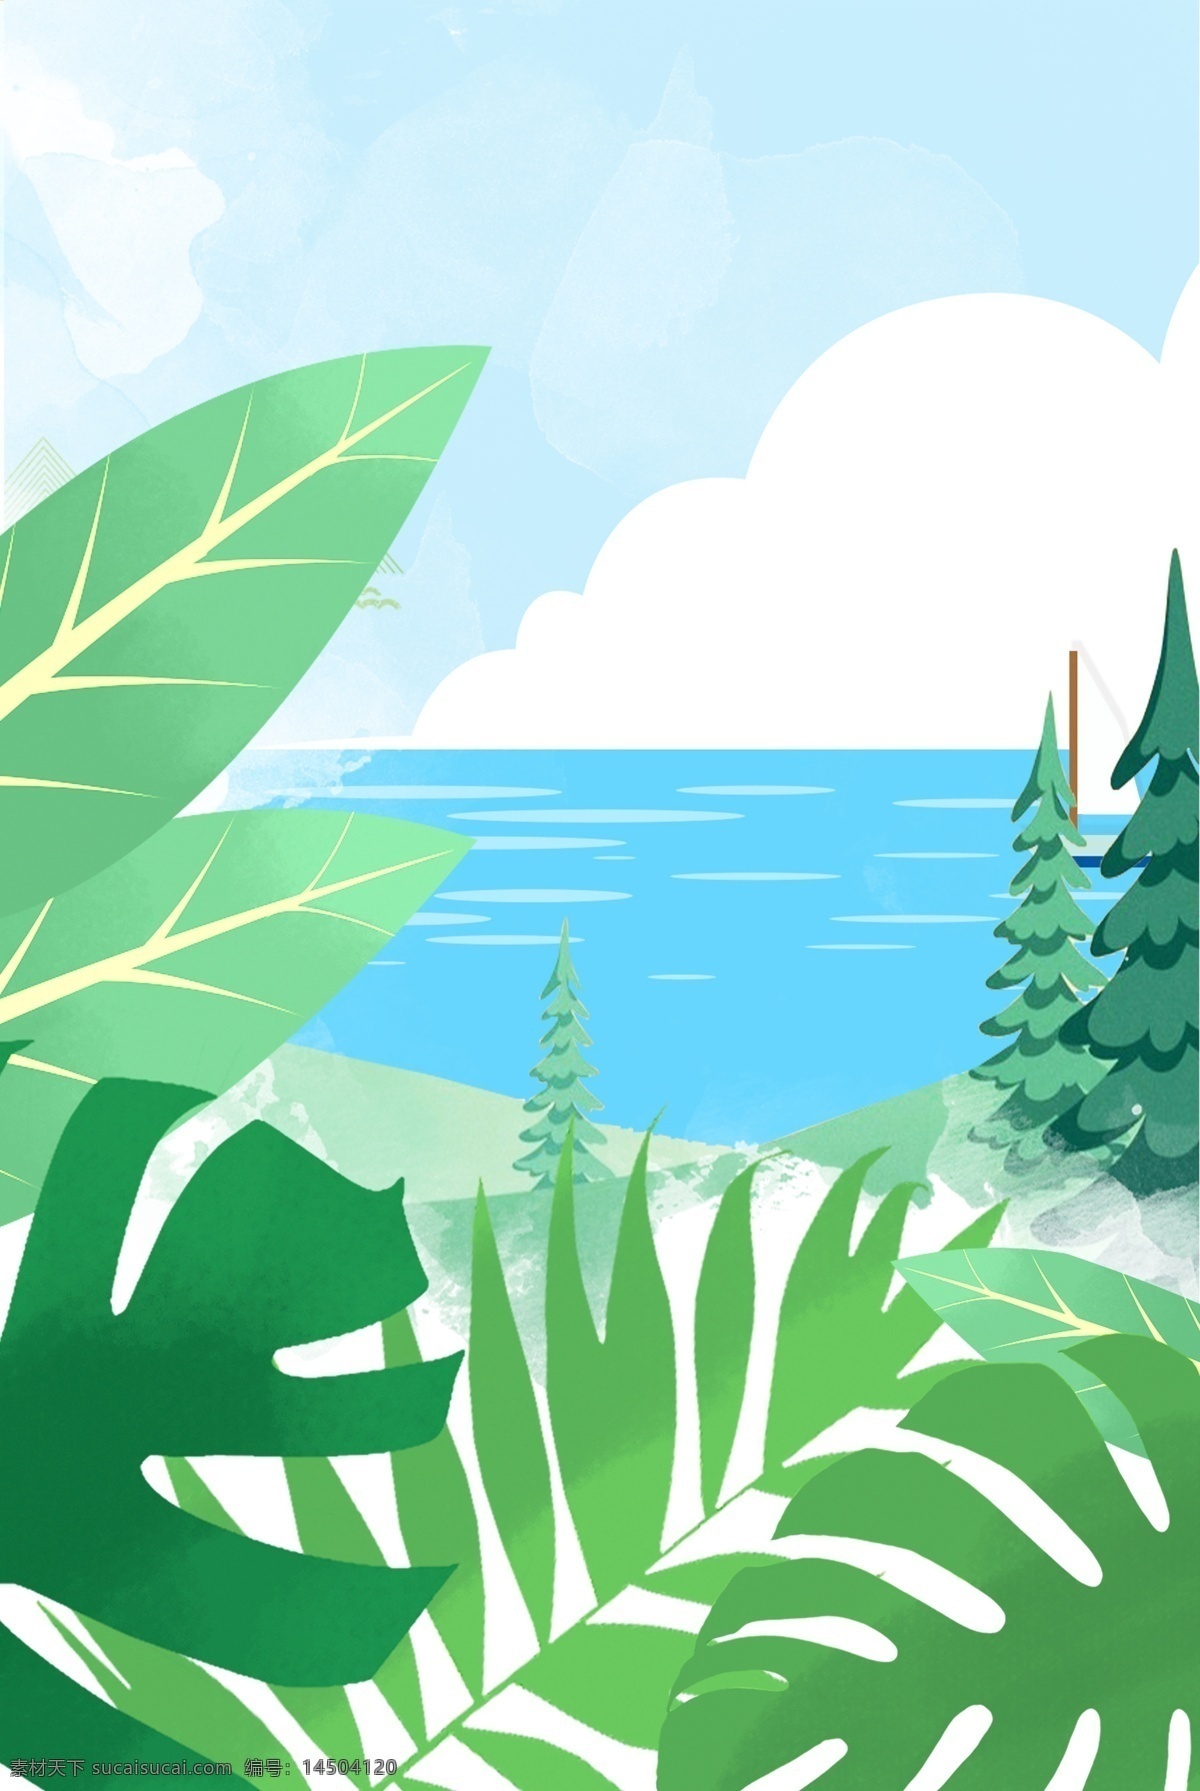 简单 沙滩 绿树 主题 背景 夏日 初夏 夏季 夏天 夏日场景 景色 美景 夏至 花卉 绿植